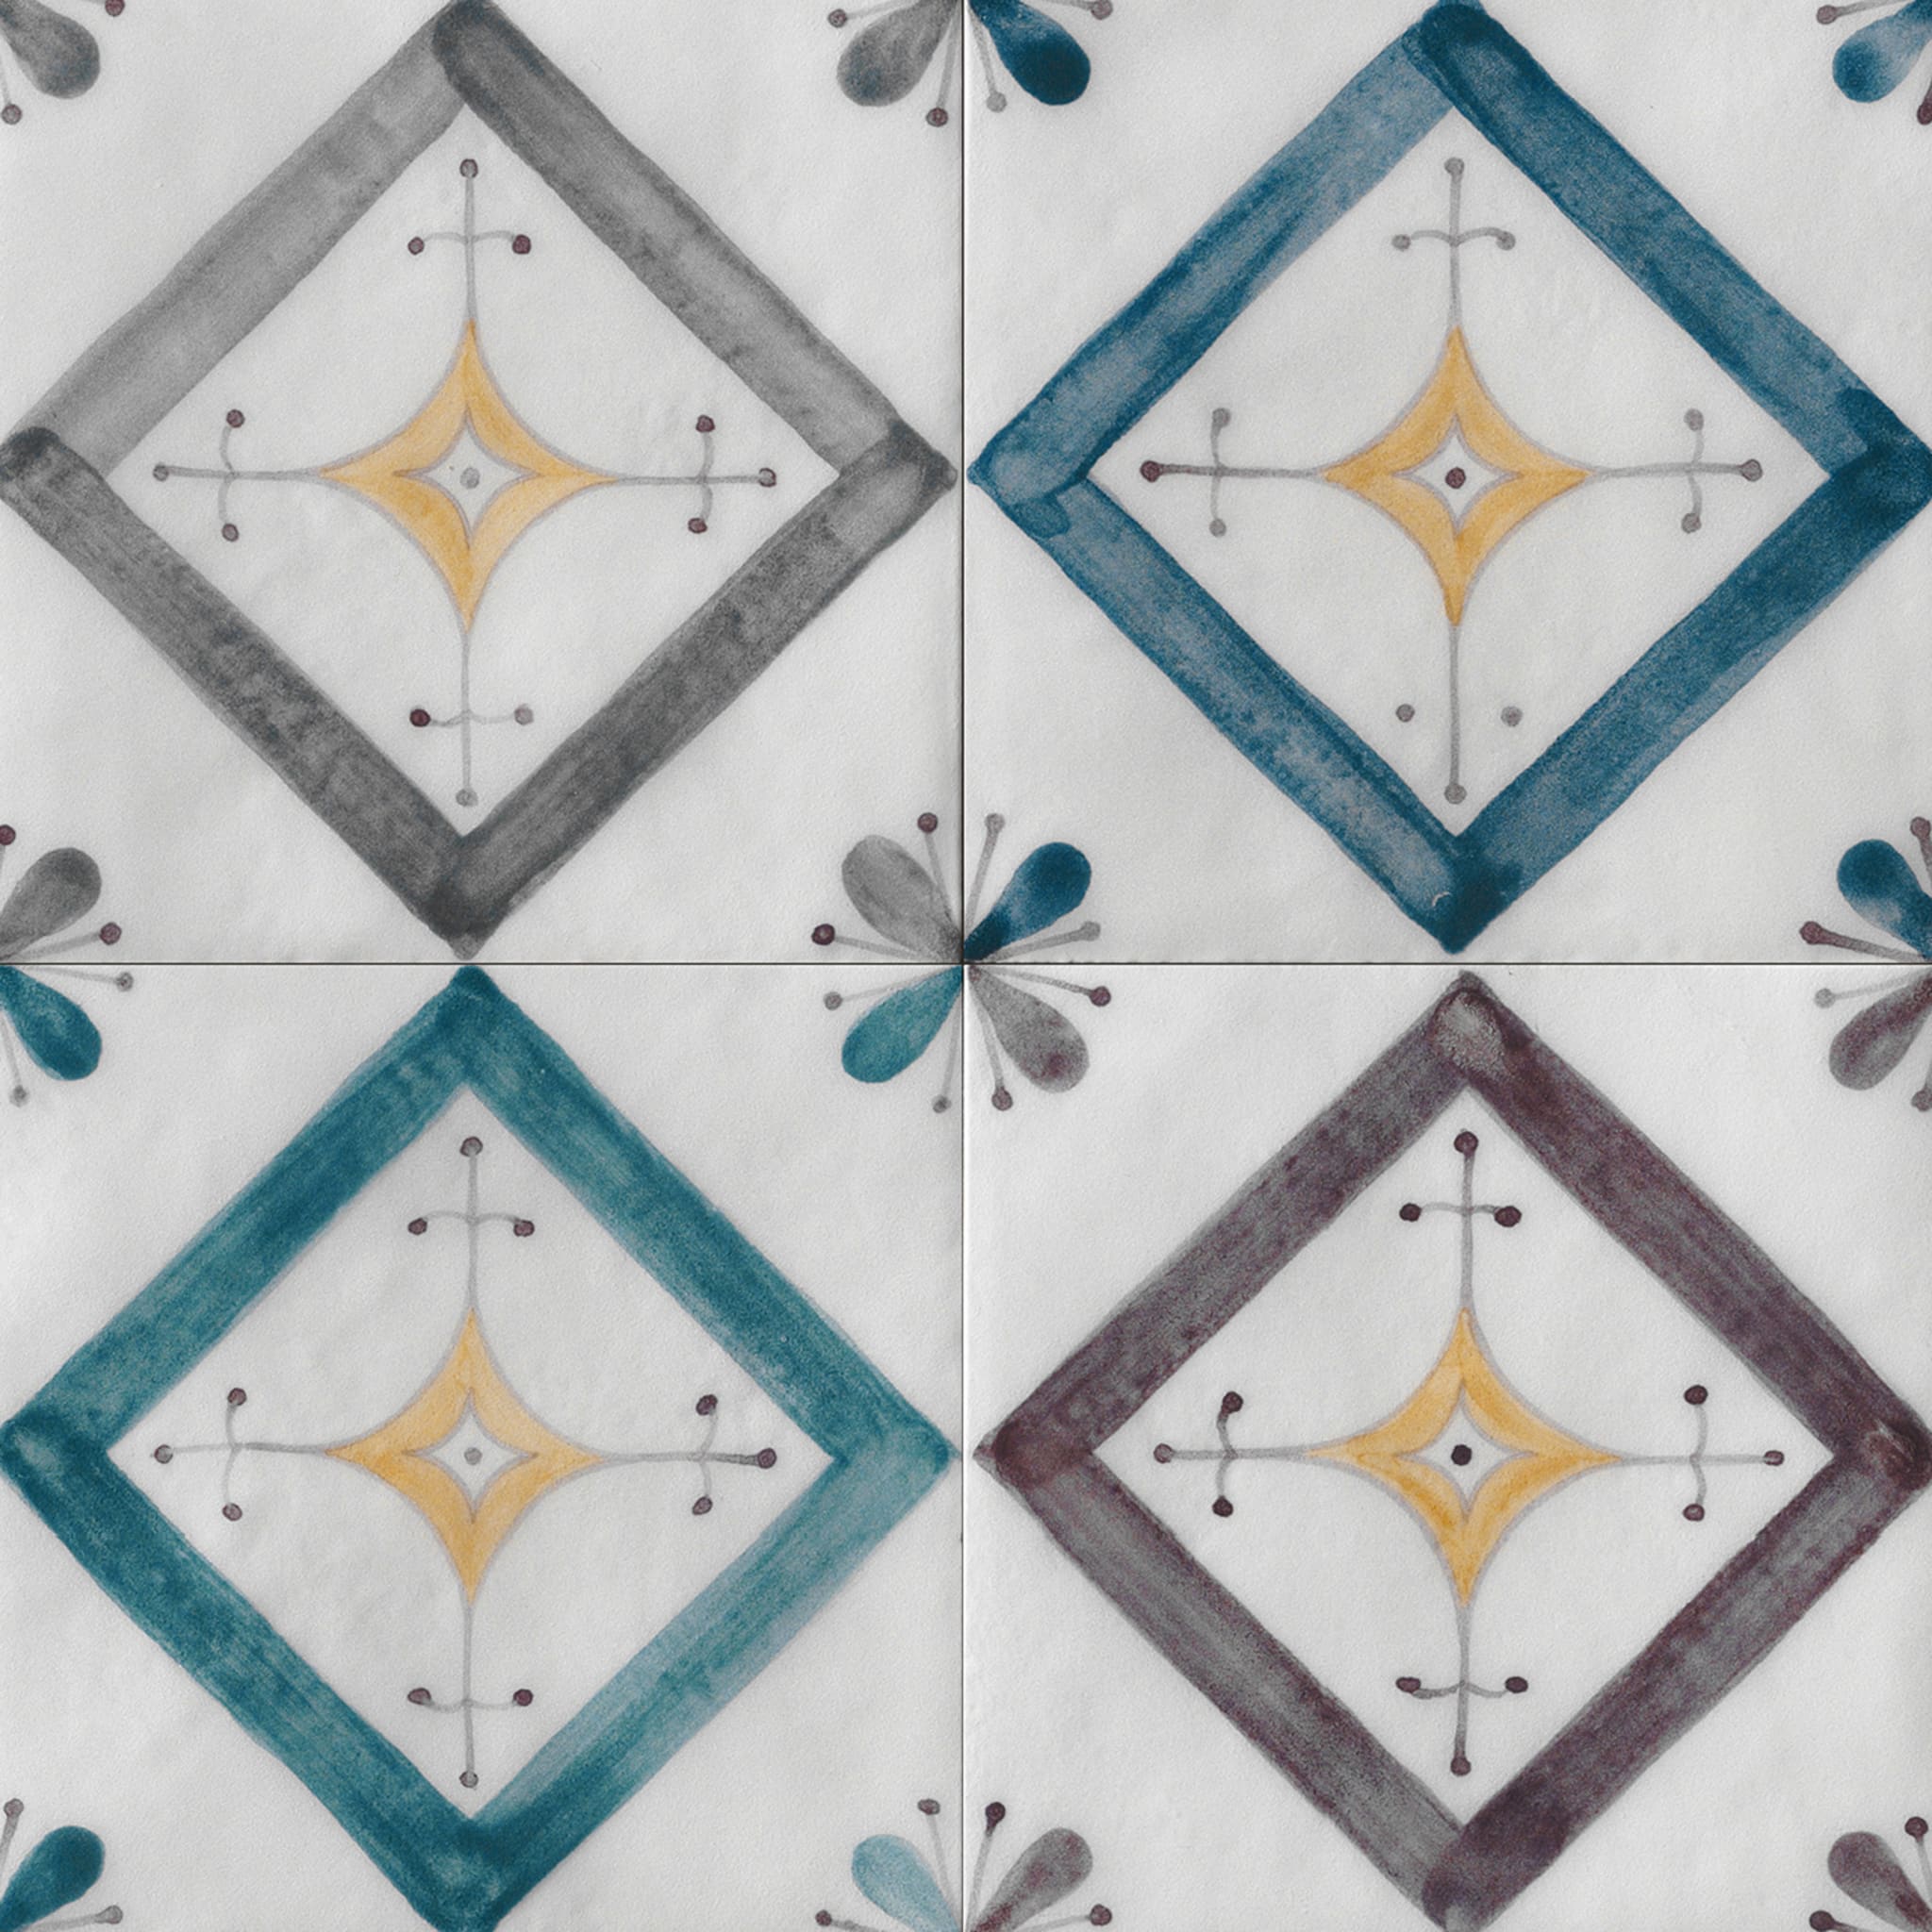 Ot Isuledda Azure Set of 24 Square Tiles - Alternative view 5